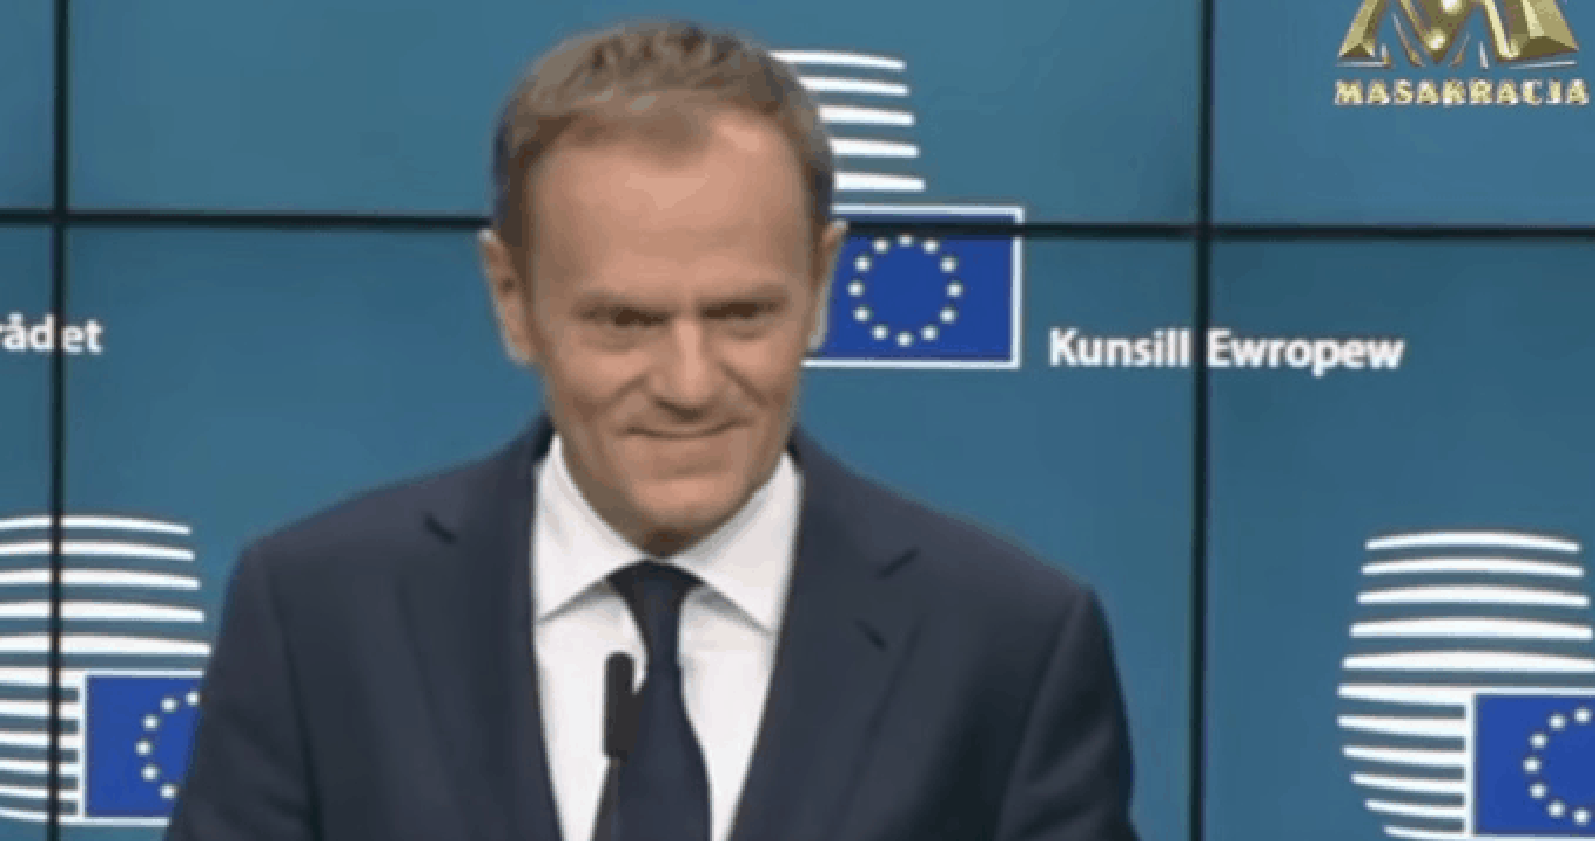 Będę mógł dosadniej mówić o tym, co się dzieje w Polsce i w całej Europie – powiedział Donald Tusk, po wyborze na nowego szefa Europejskiej Partii Ludowej.